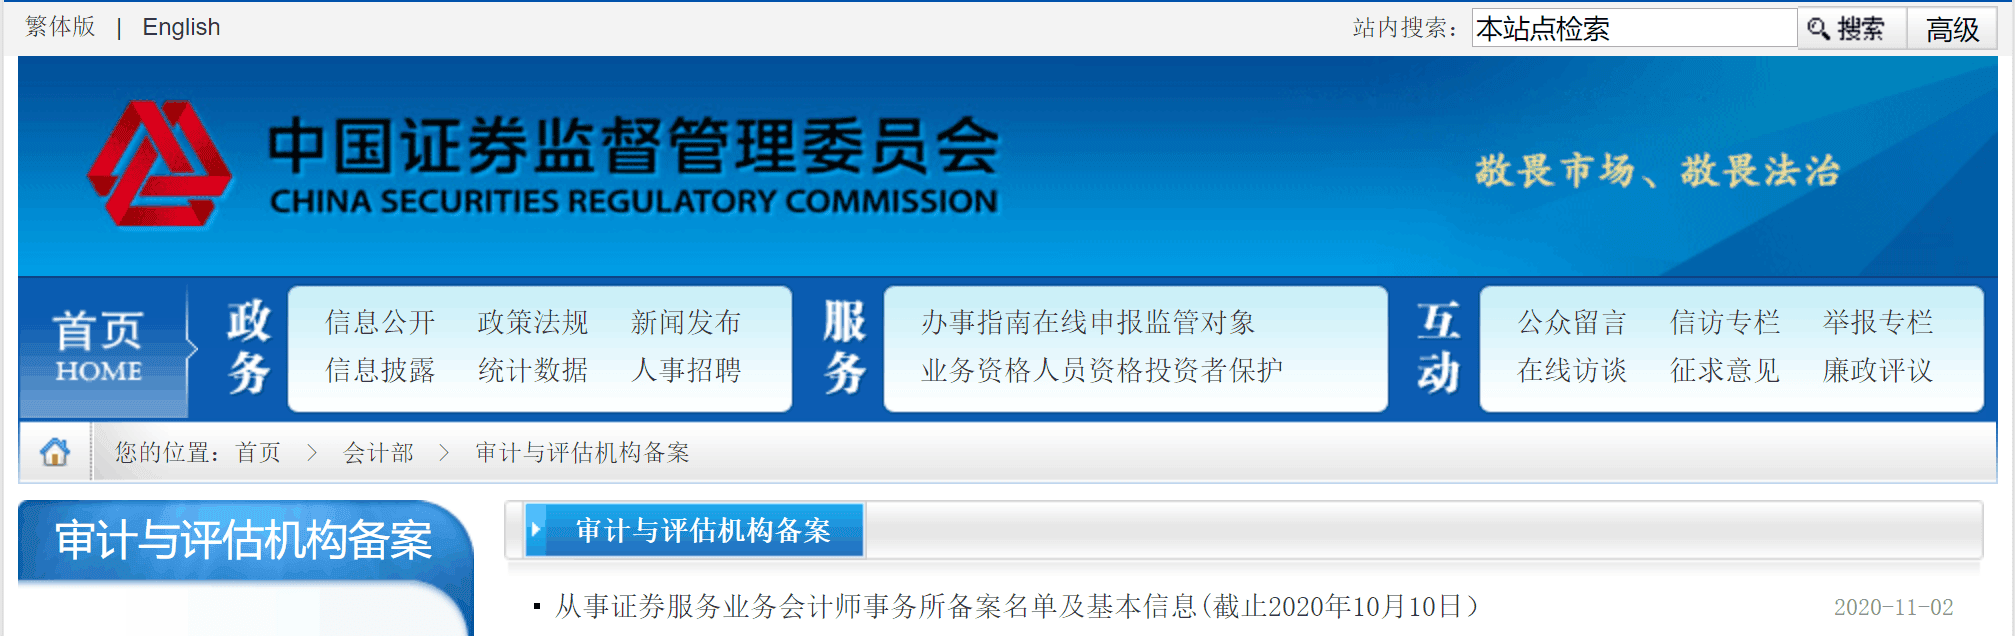 深圳堂堂会计师事务所具备上市公司审计资格